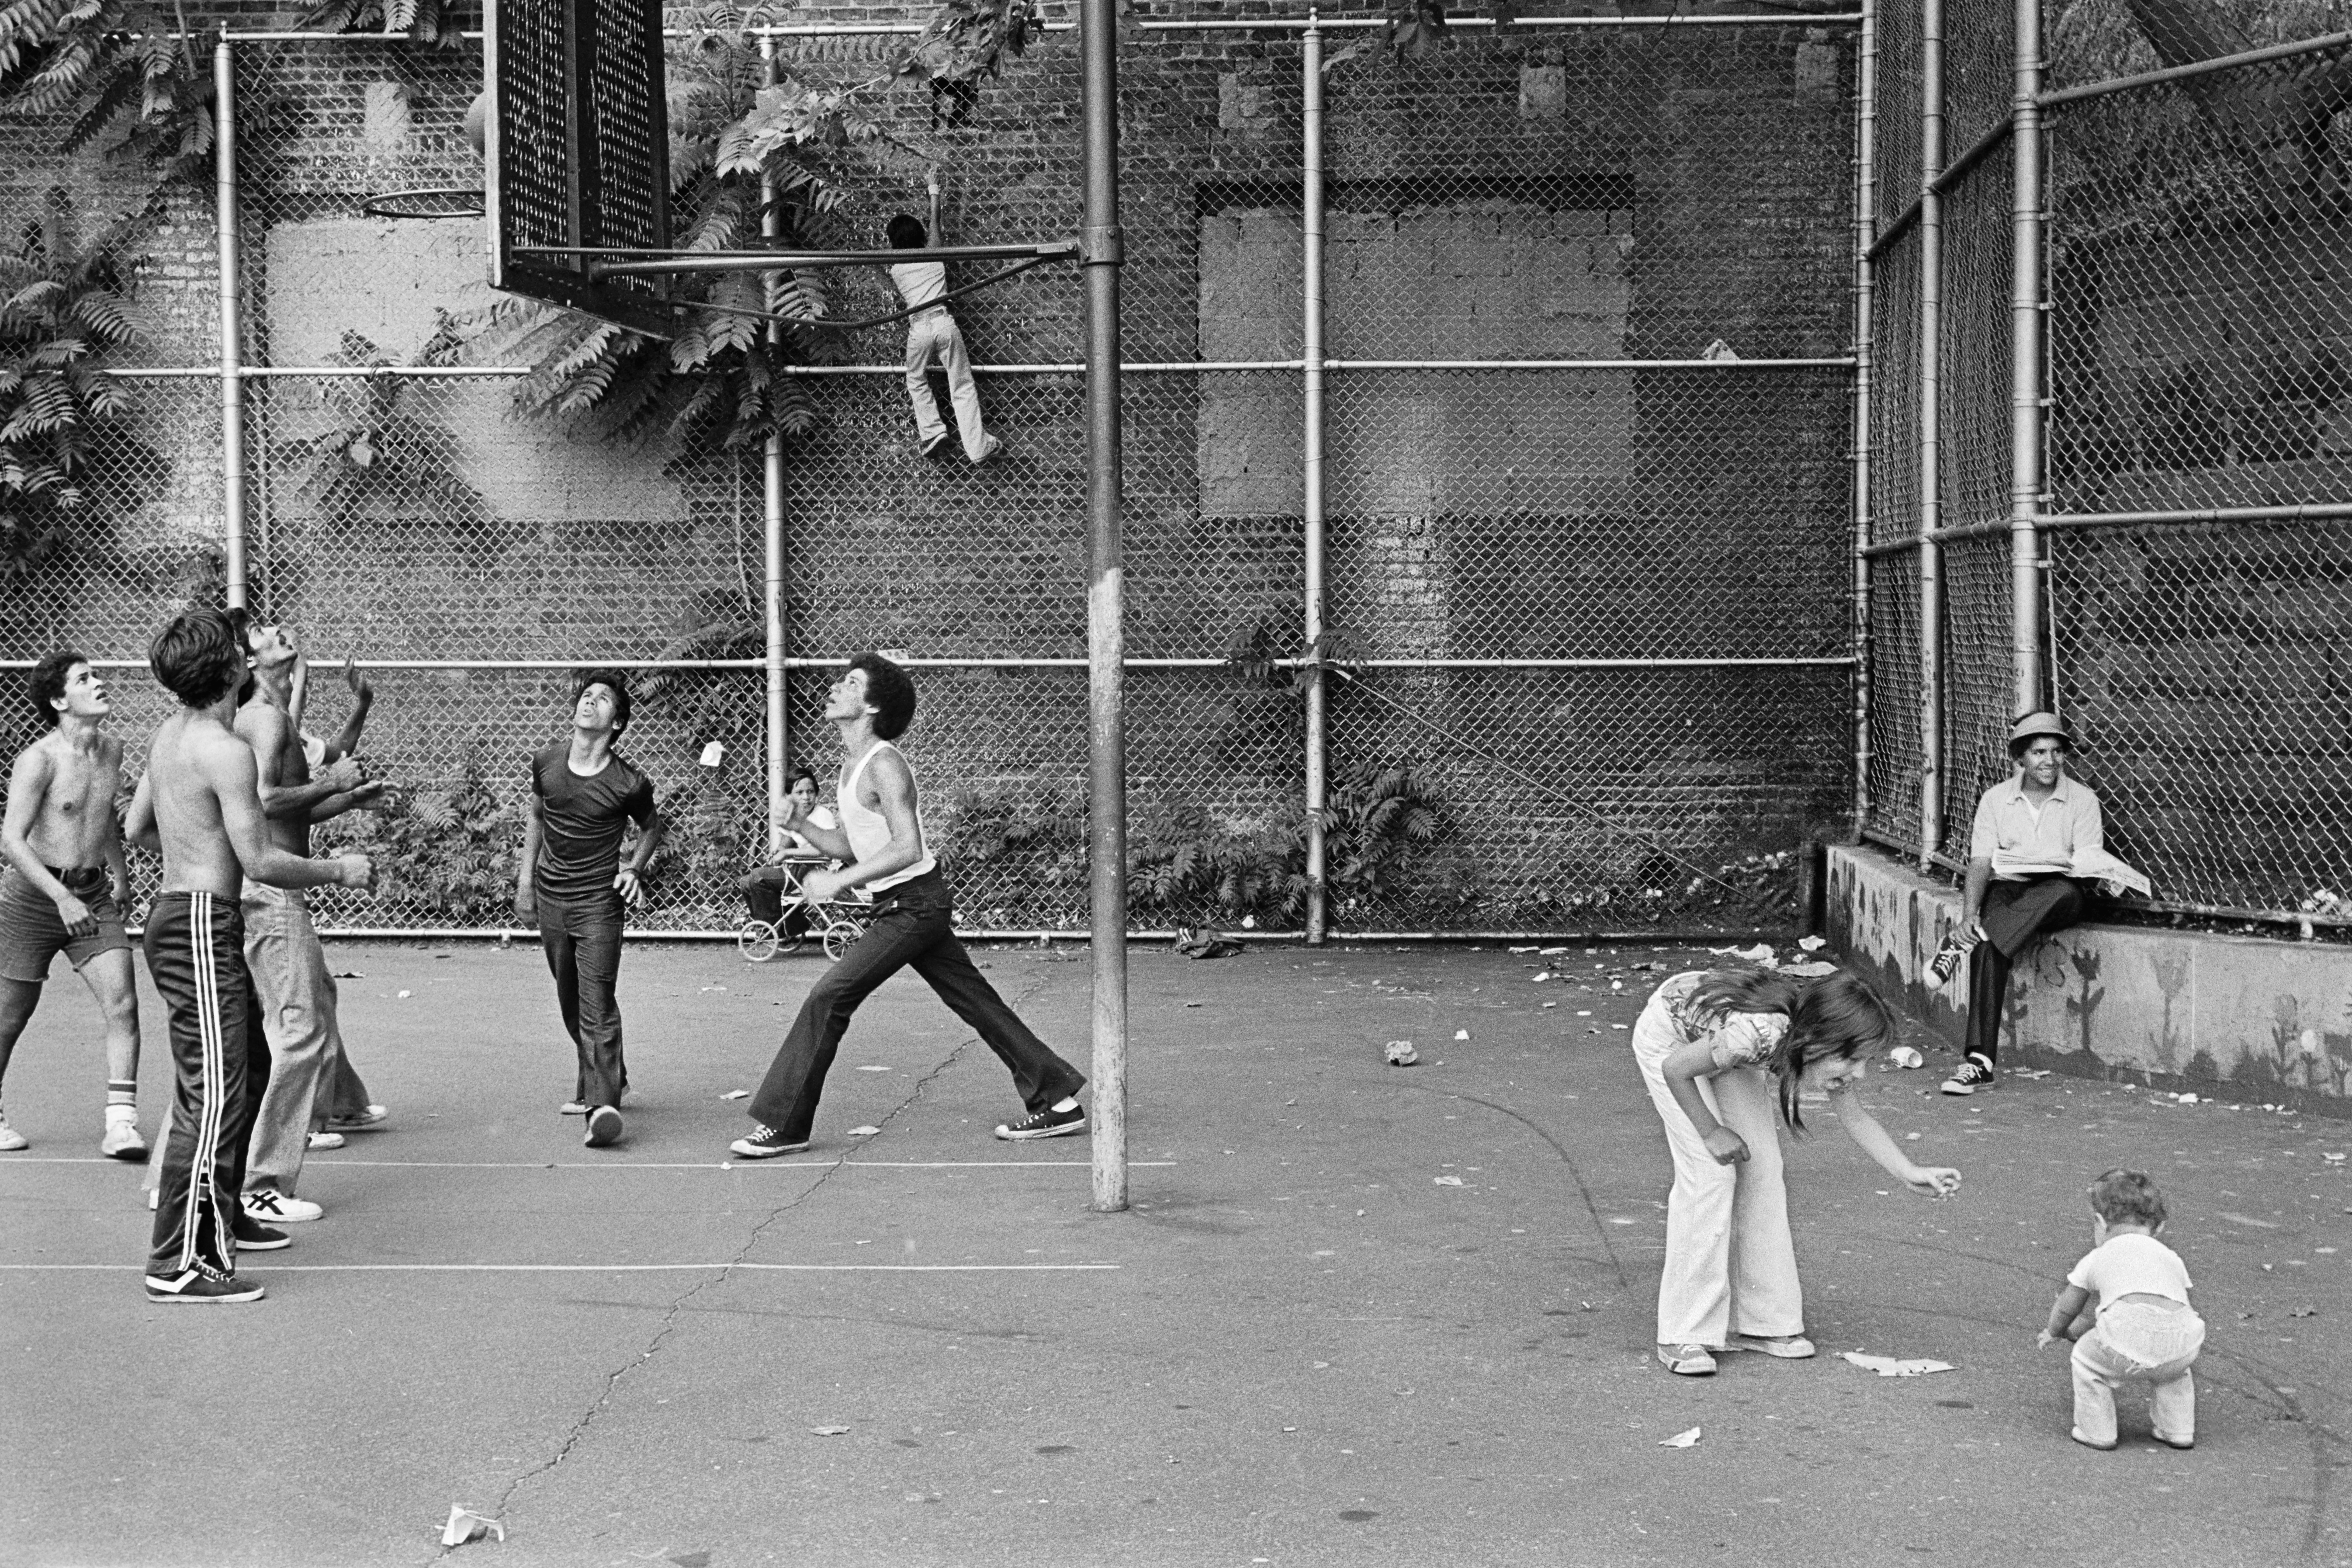 目の前の女性と子供のXNUMXつの建物の間のバスケットボールコートでバスケットボールをしている人の写真